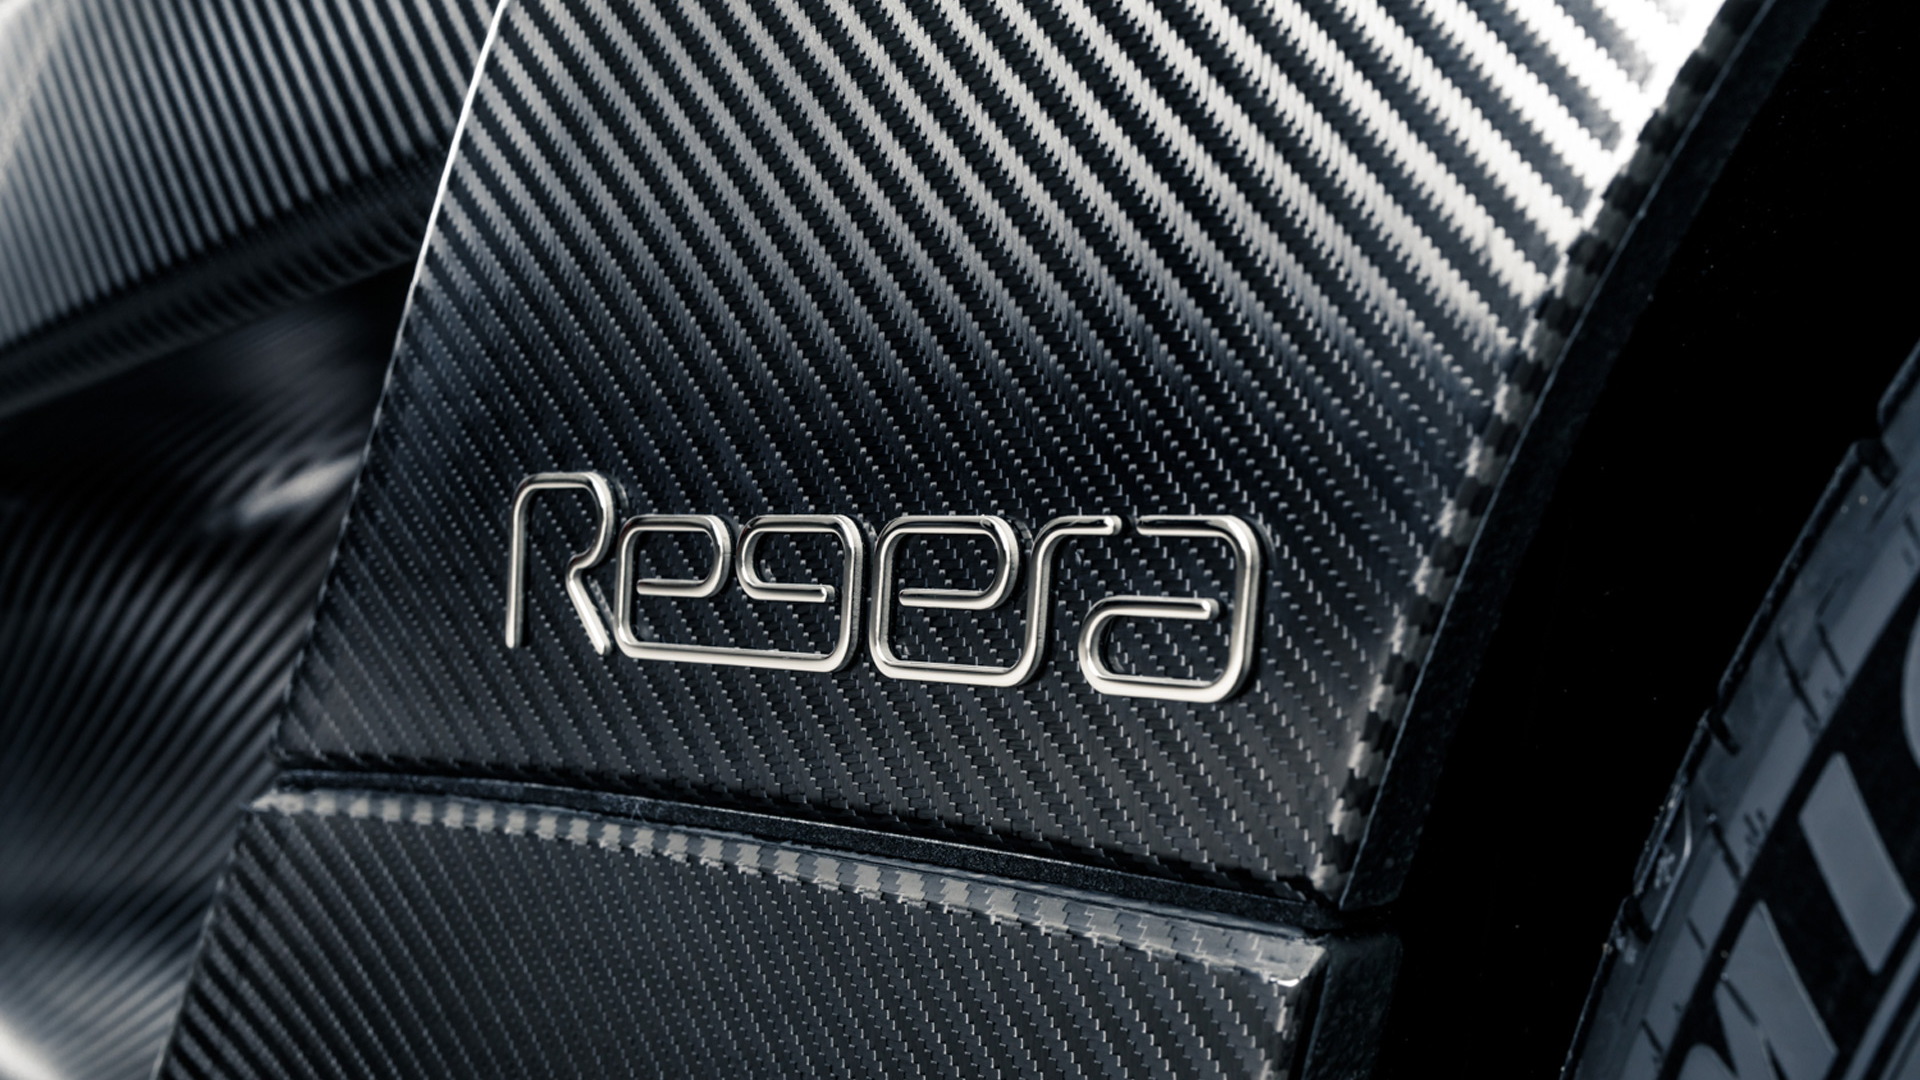 Koenigsegg Regera in bare carbon fiber - Image via Keno Zache Photography/Carage